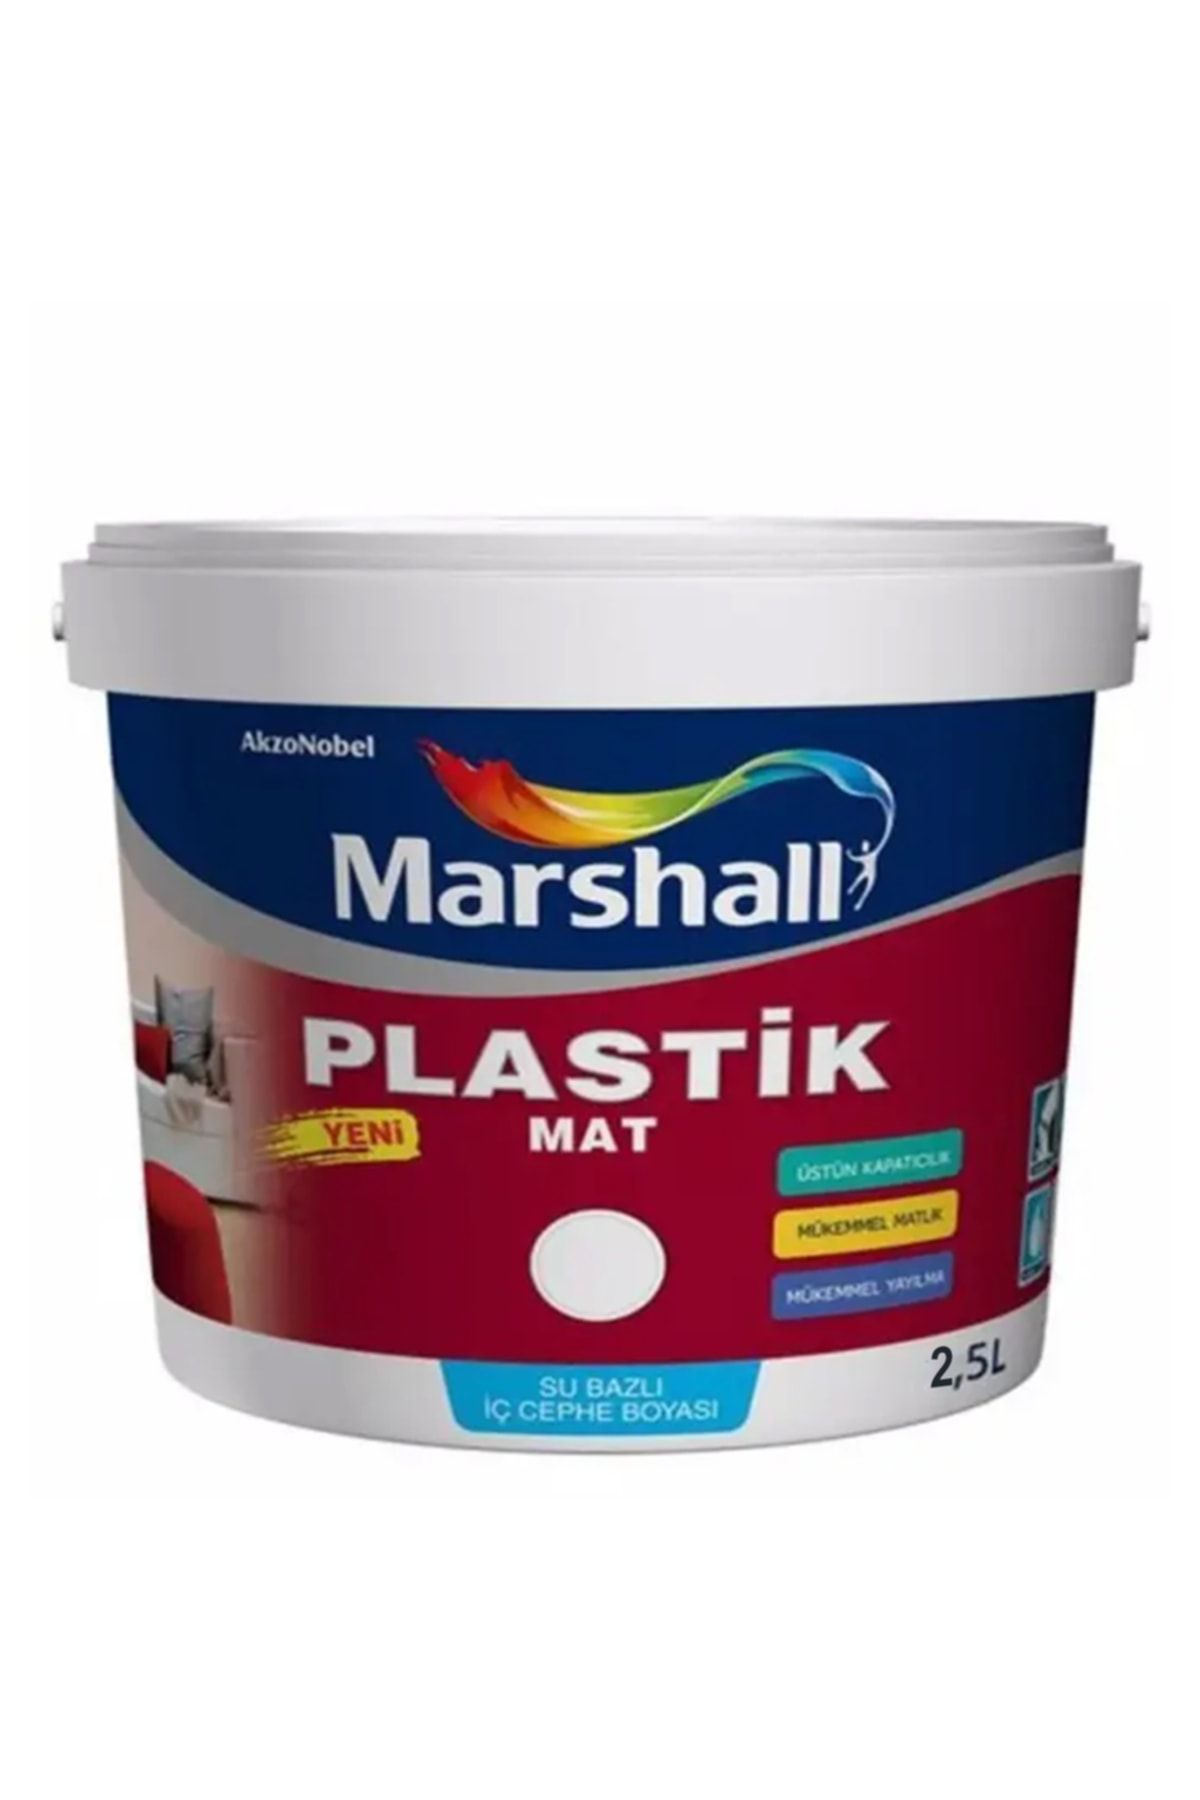 Marshall Plastik Mat Silinebilir Iç Cephe Boyası Akşam Sefası 2,5 Lt (3,5 Kg)